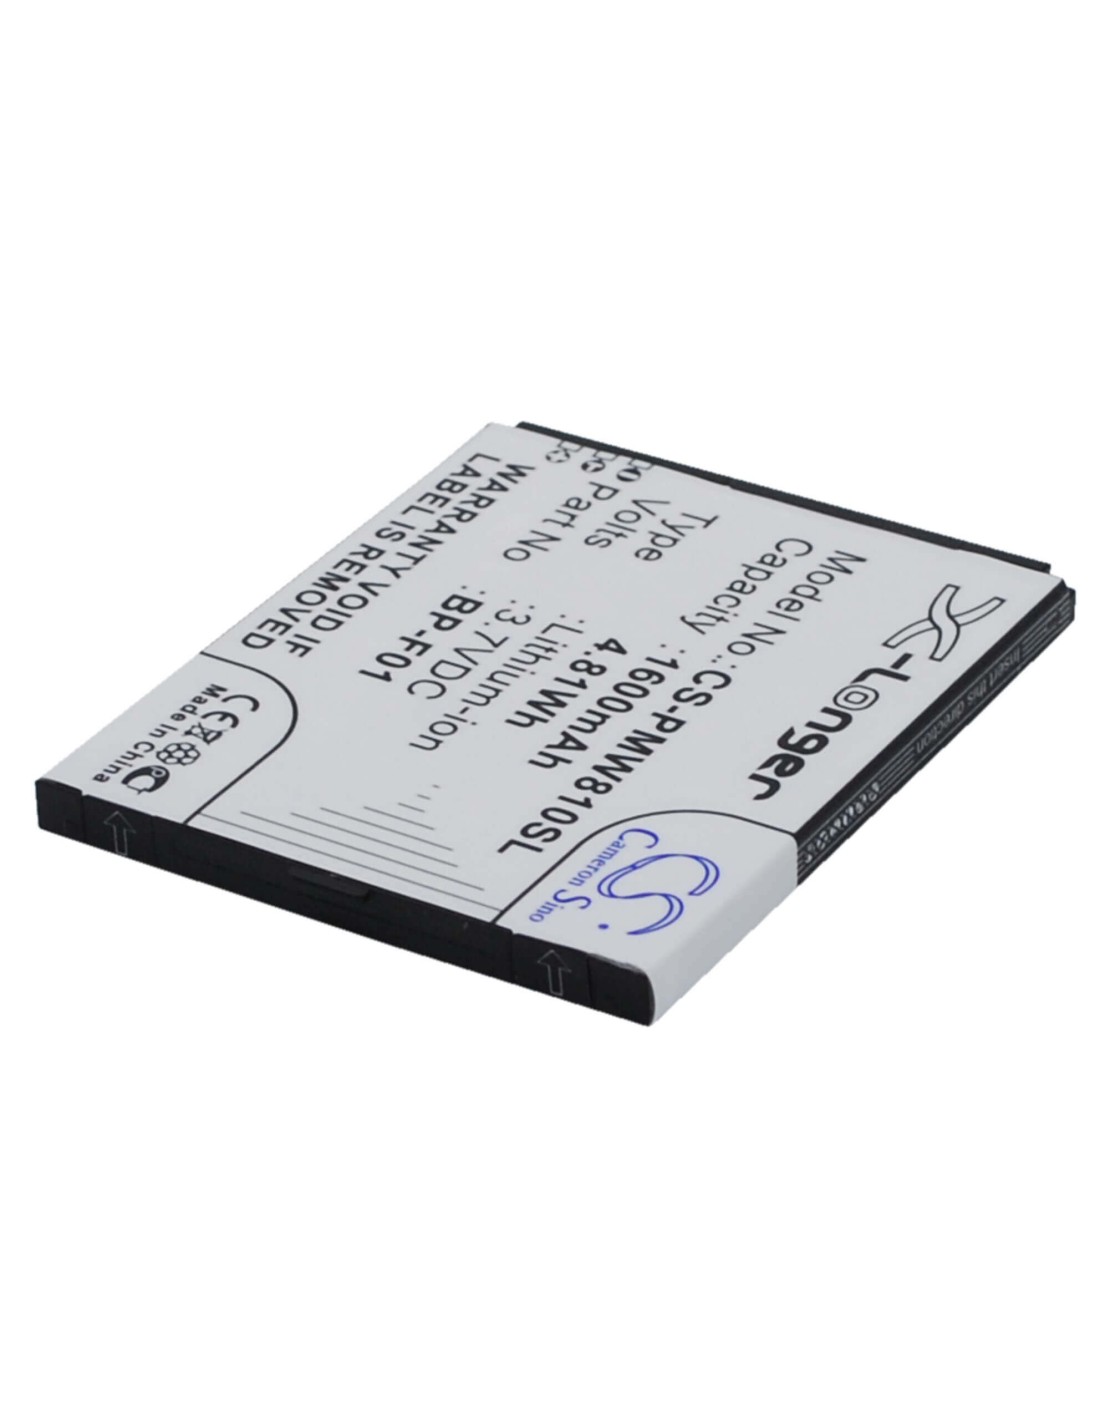 Battery for PHICOMM FWS610, FWS810 3.7V, 1300mAh - 4.81Wh